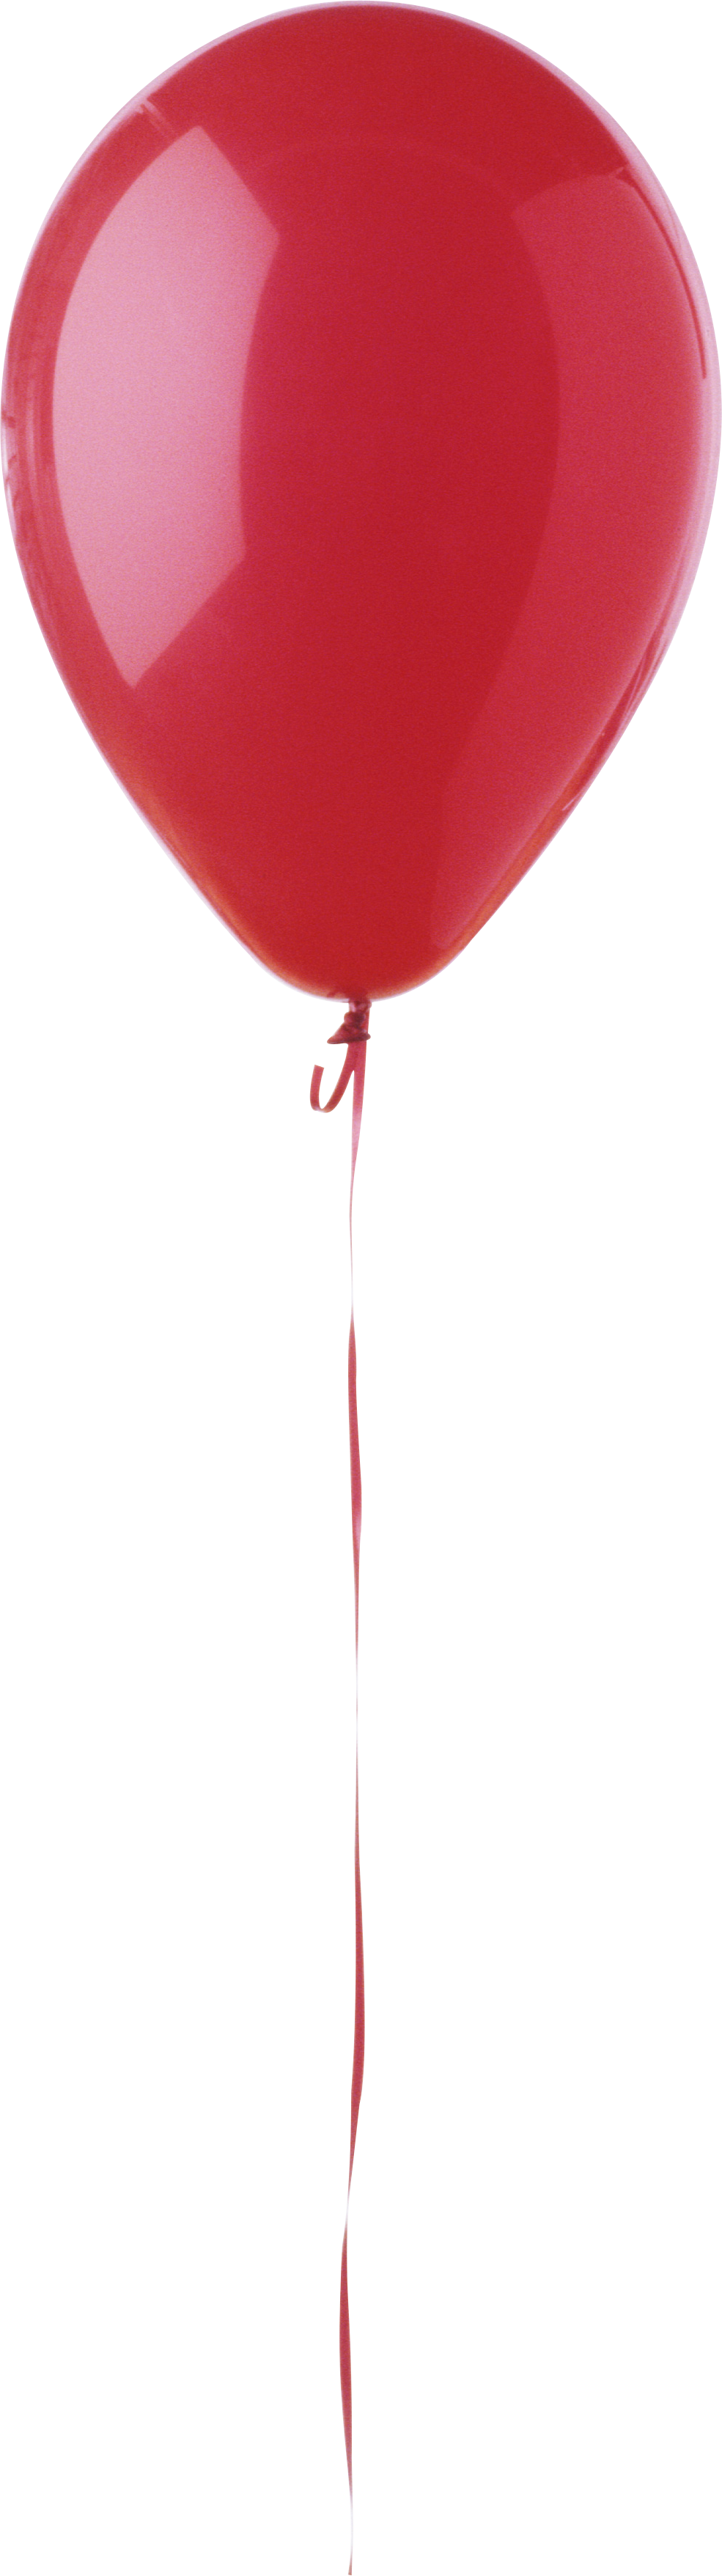 Balloon Single Heart